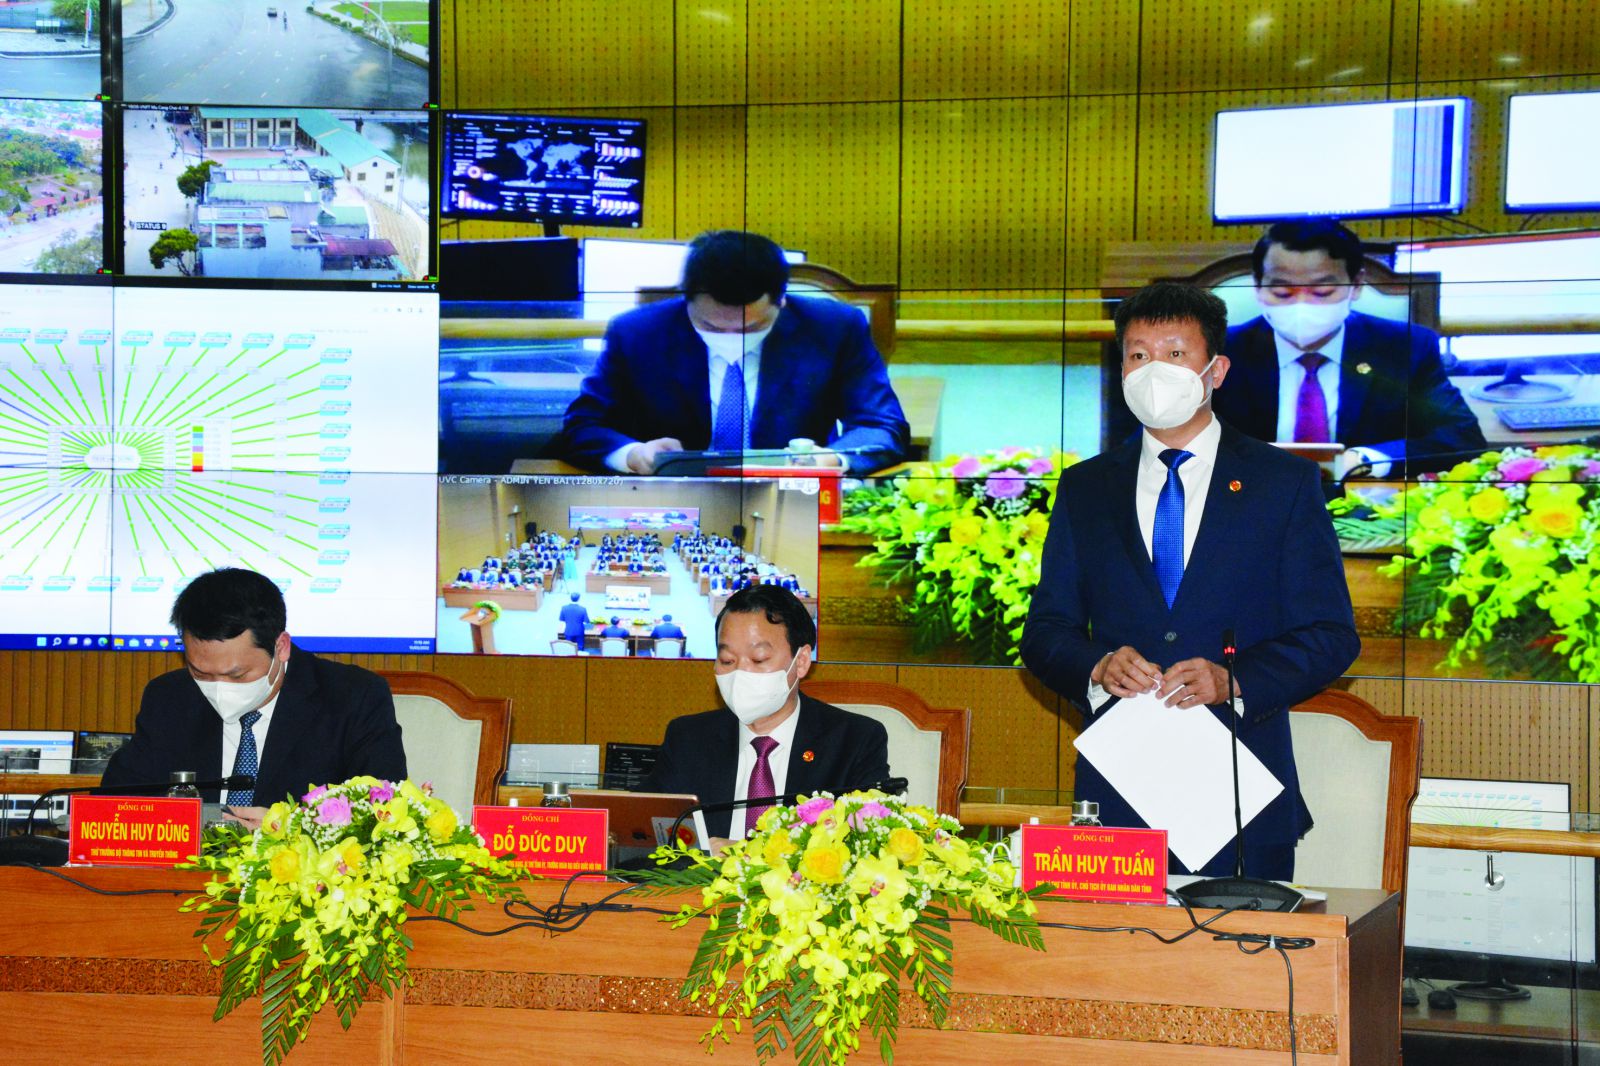  Chủ tịch UBND tỉnh Trần Huy Tuấn phát biểu tại buổi khai trương cơ sở hạ tầng đô thị thông minh và Hội nghị triển khai nhiệm vụ 